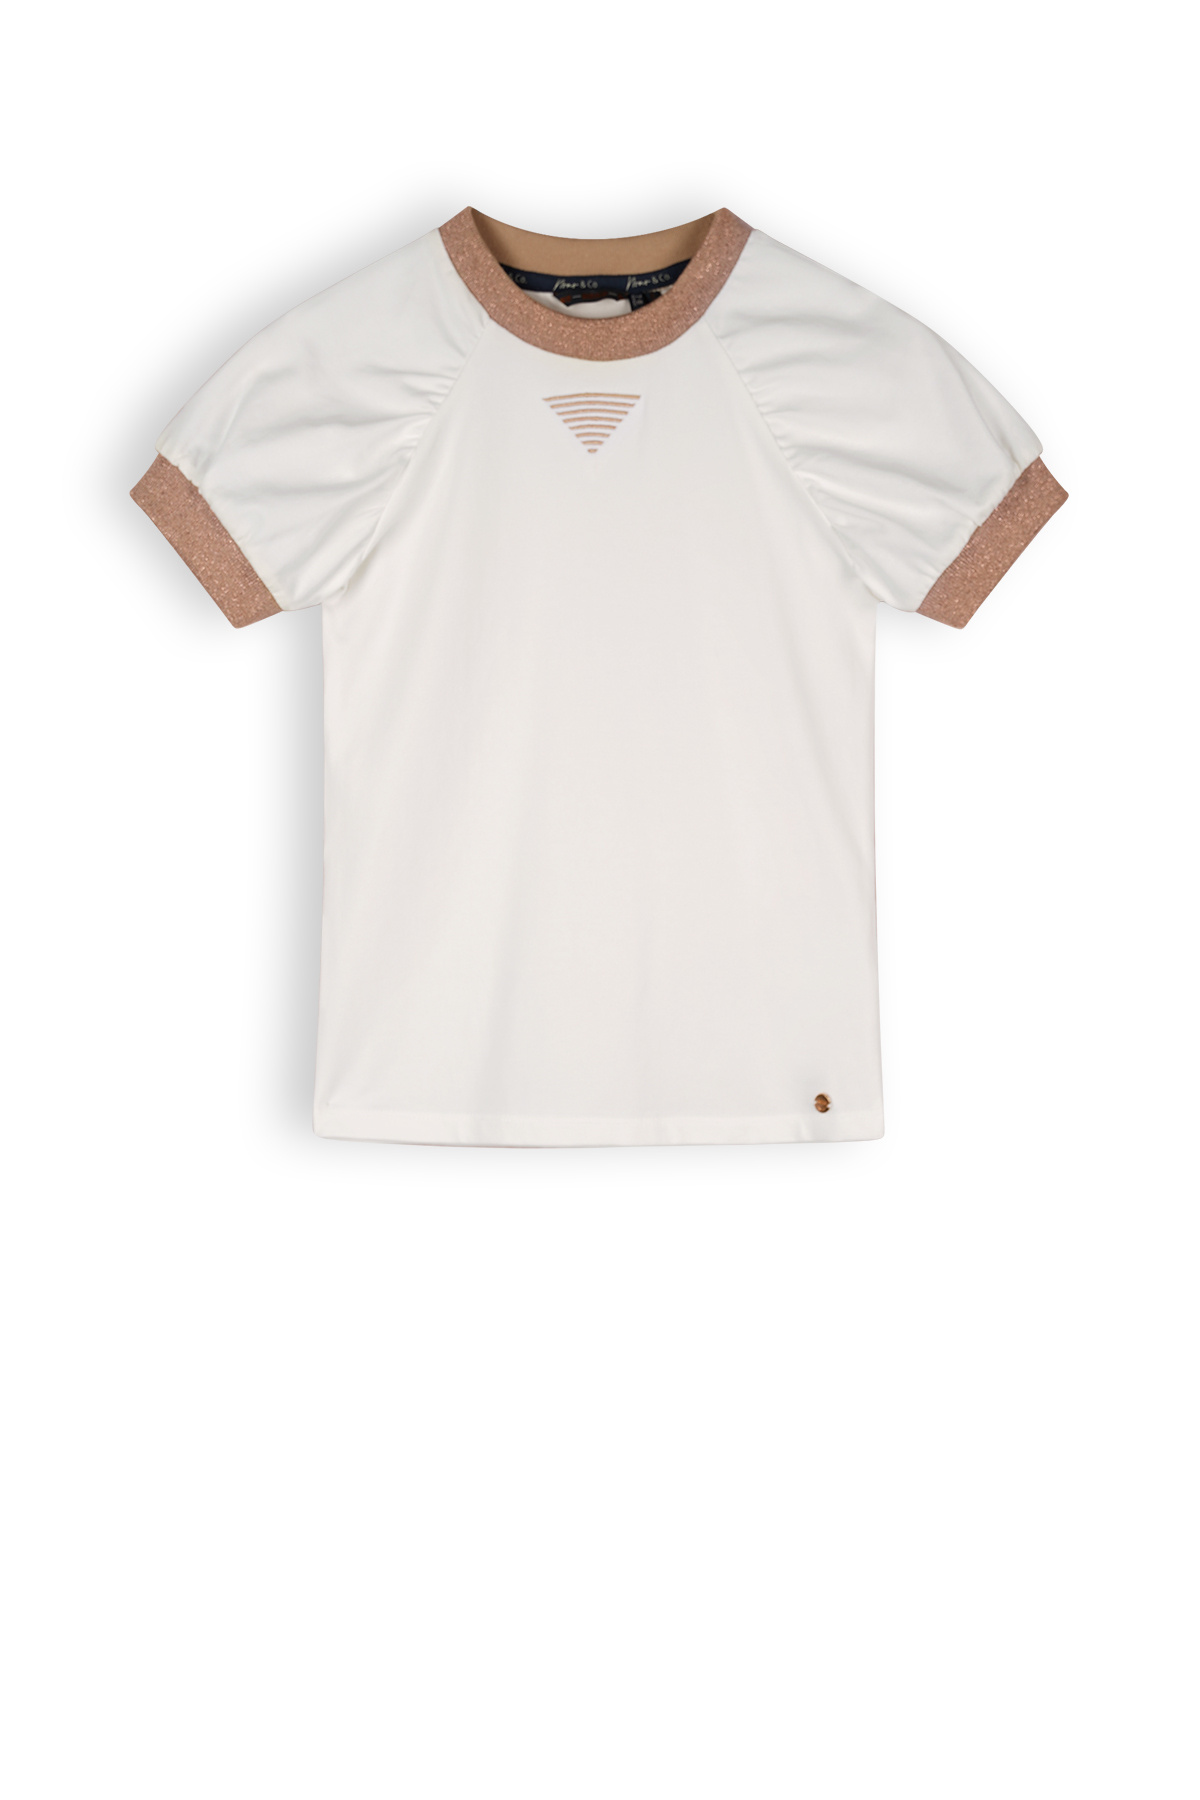 Meisjes t-shirt - Kayla - Sneeuw wit